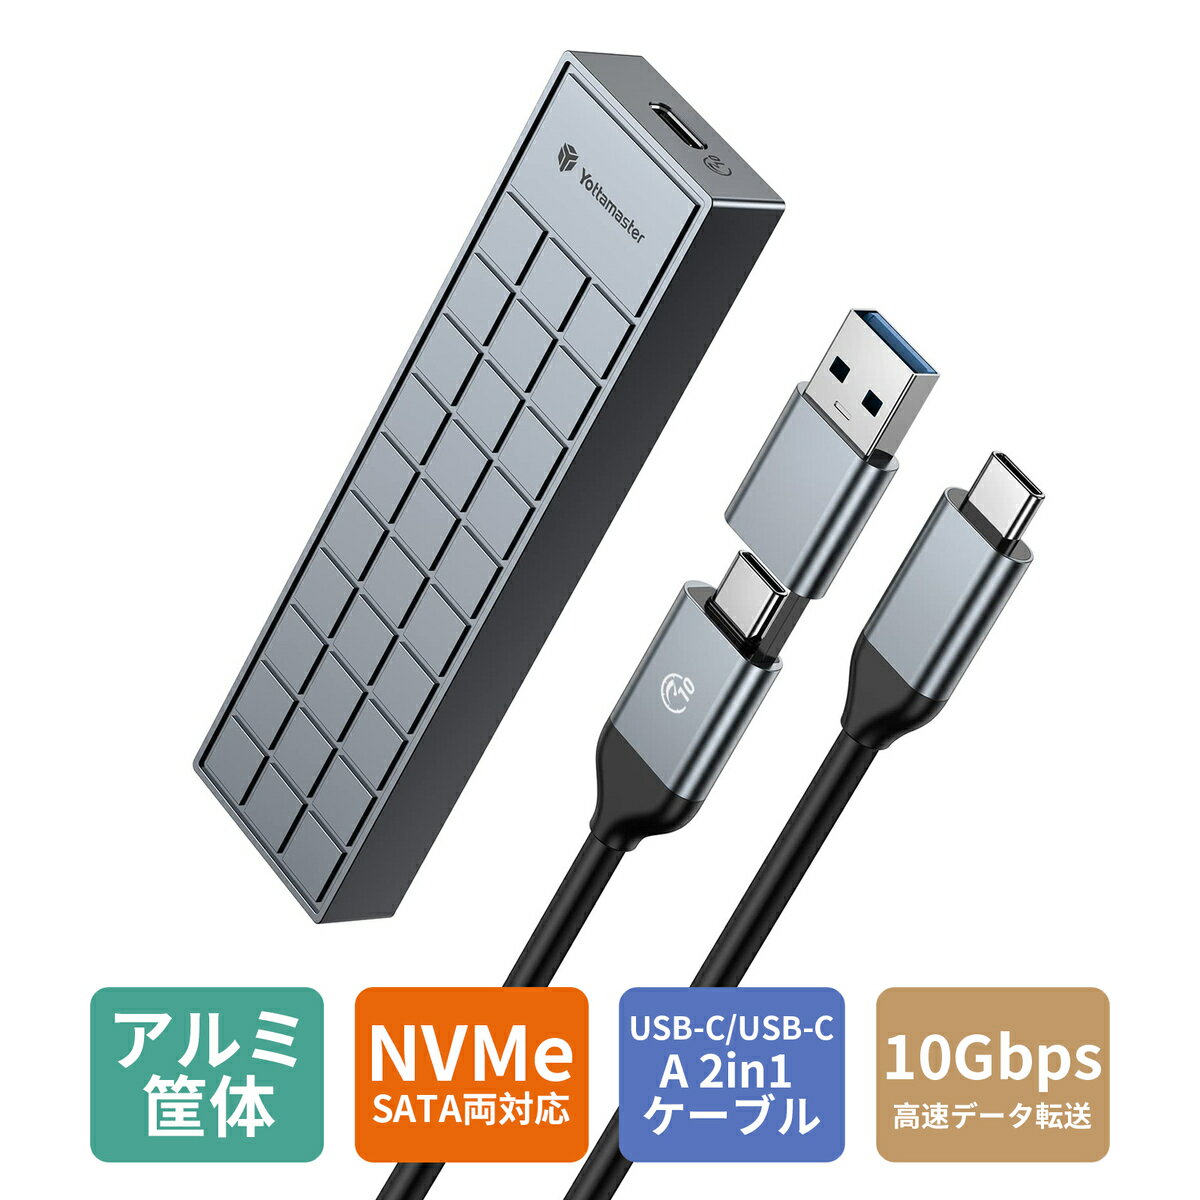 Yottamaster M.2 SSD 外付けケース NVMe対応 M.2 SSD ケース USB3.1 Gen2 10Gbps高速転送 UASP＆Trim対応 アルミ製 M.2 SSD 外付け エンクロージャ グレー/シルバー/ロースゴールド